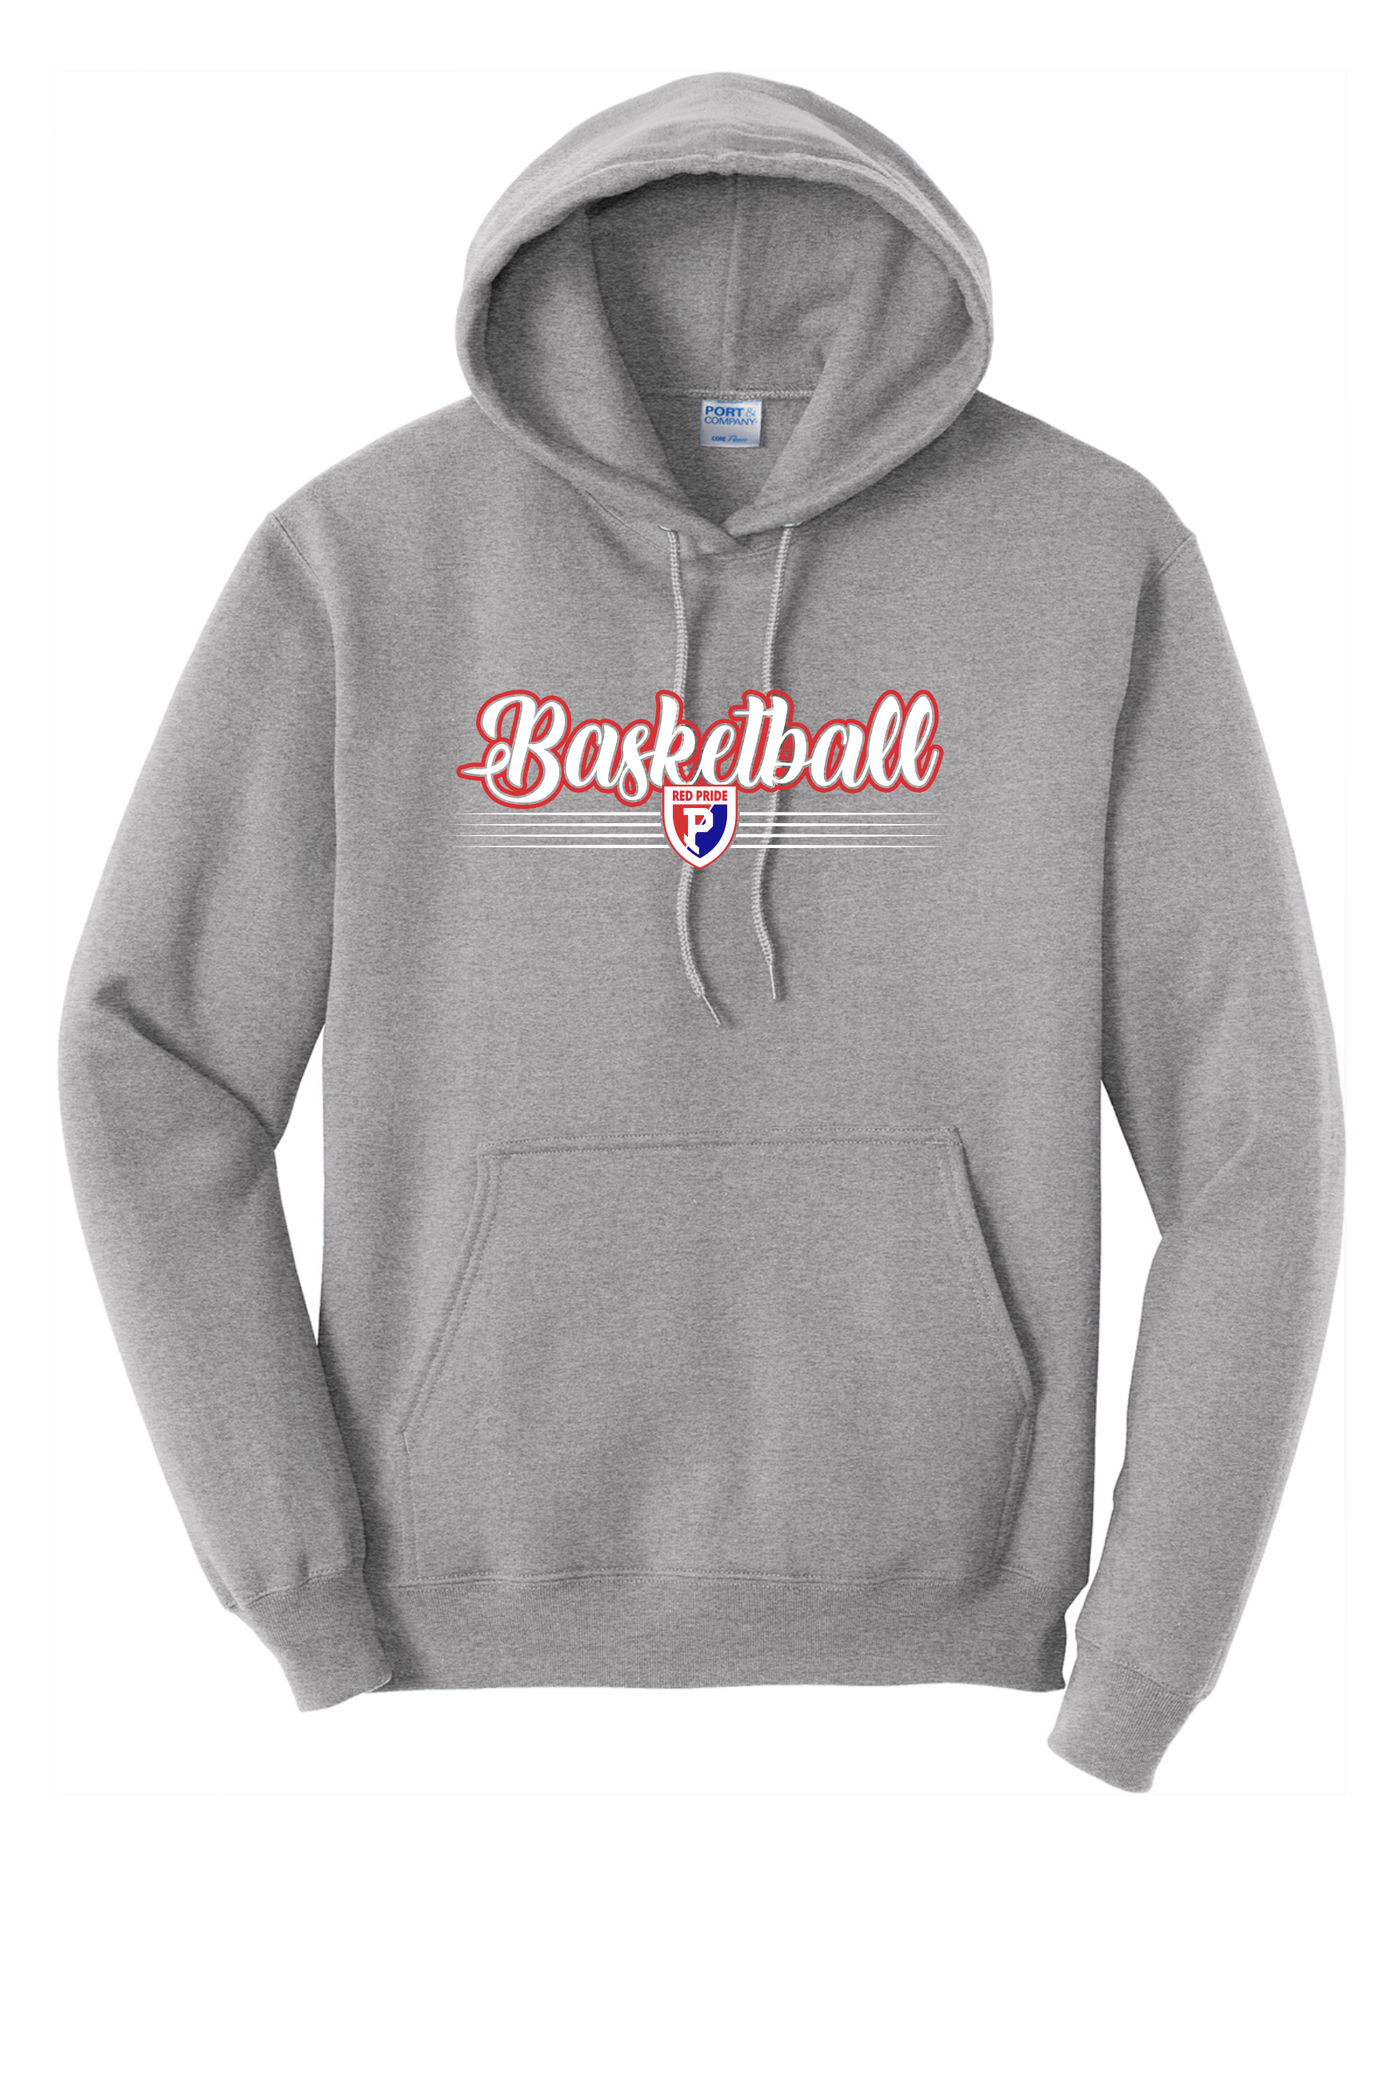 Plainfield Hooded Sweatshirt - H4 ADULT - Y&S Designs, LLC